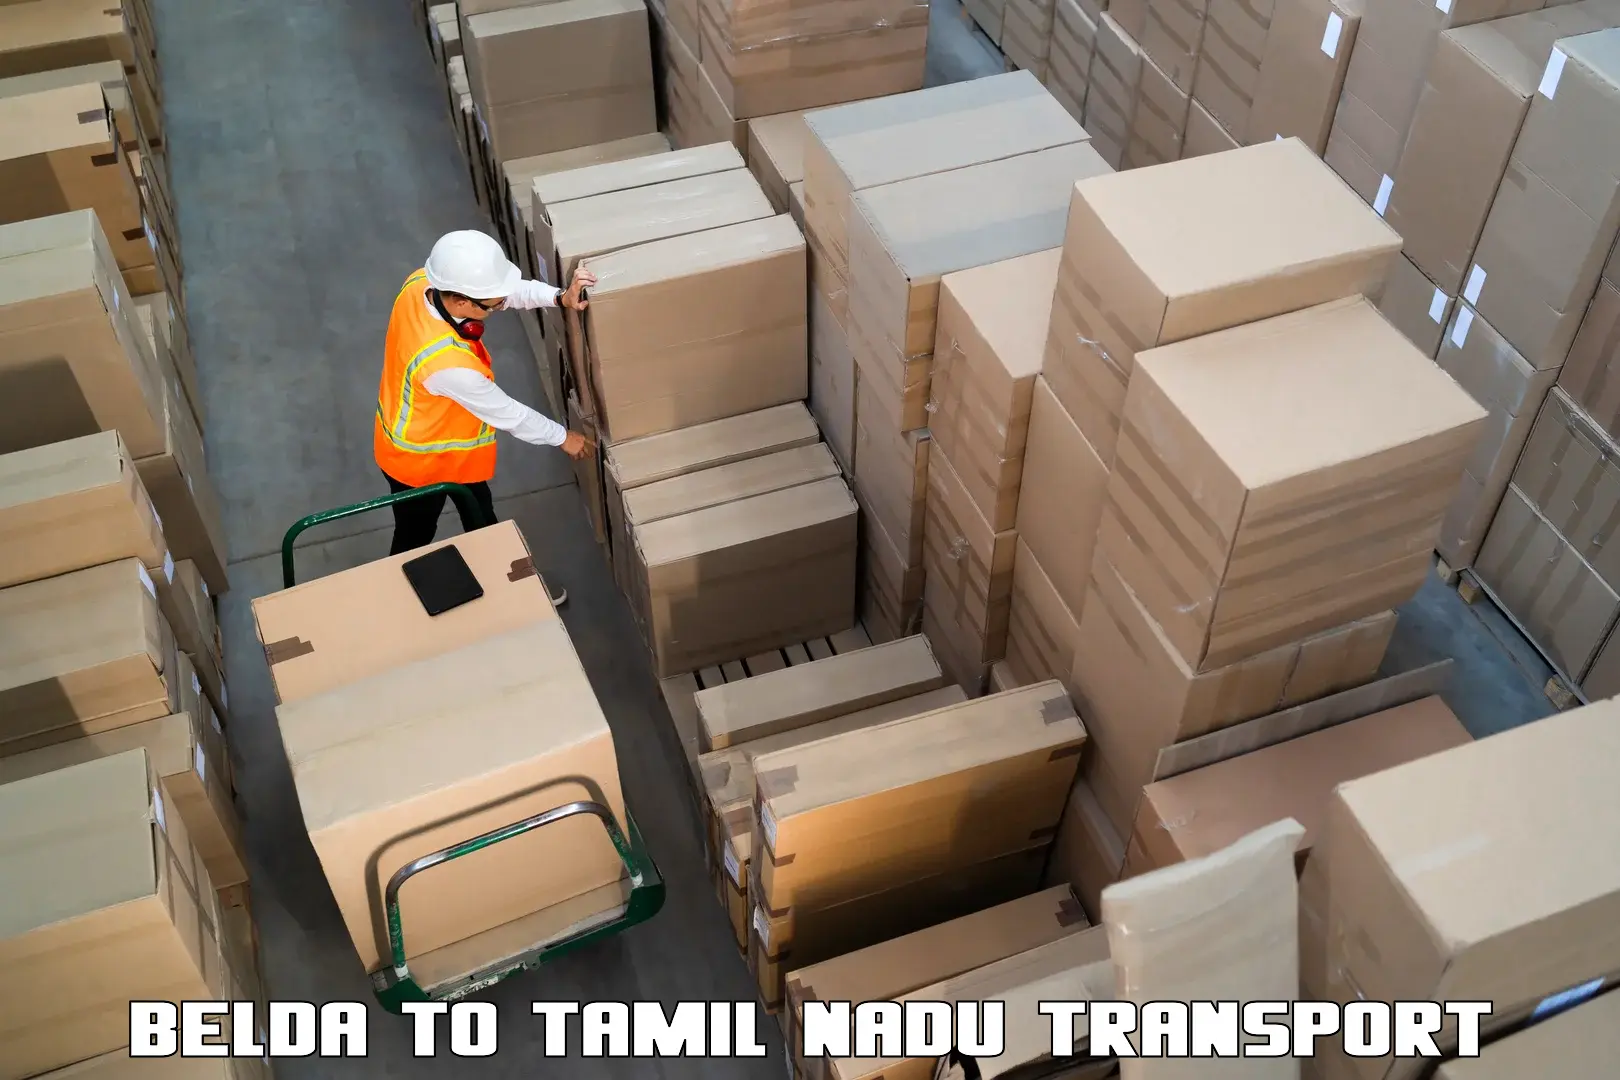 Road transport online services Belda to Tiruvallur